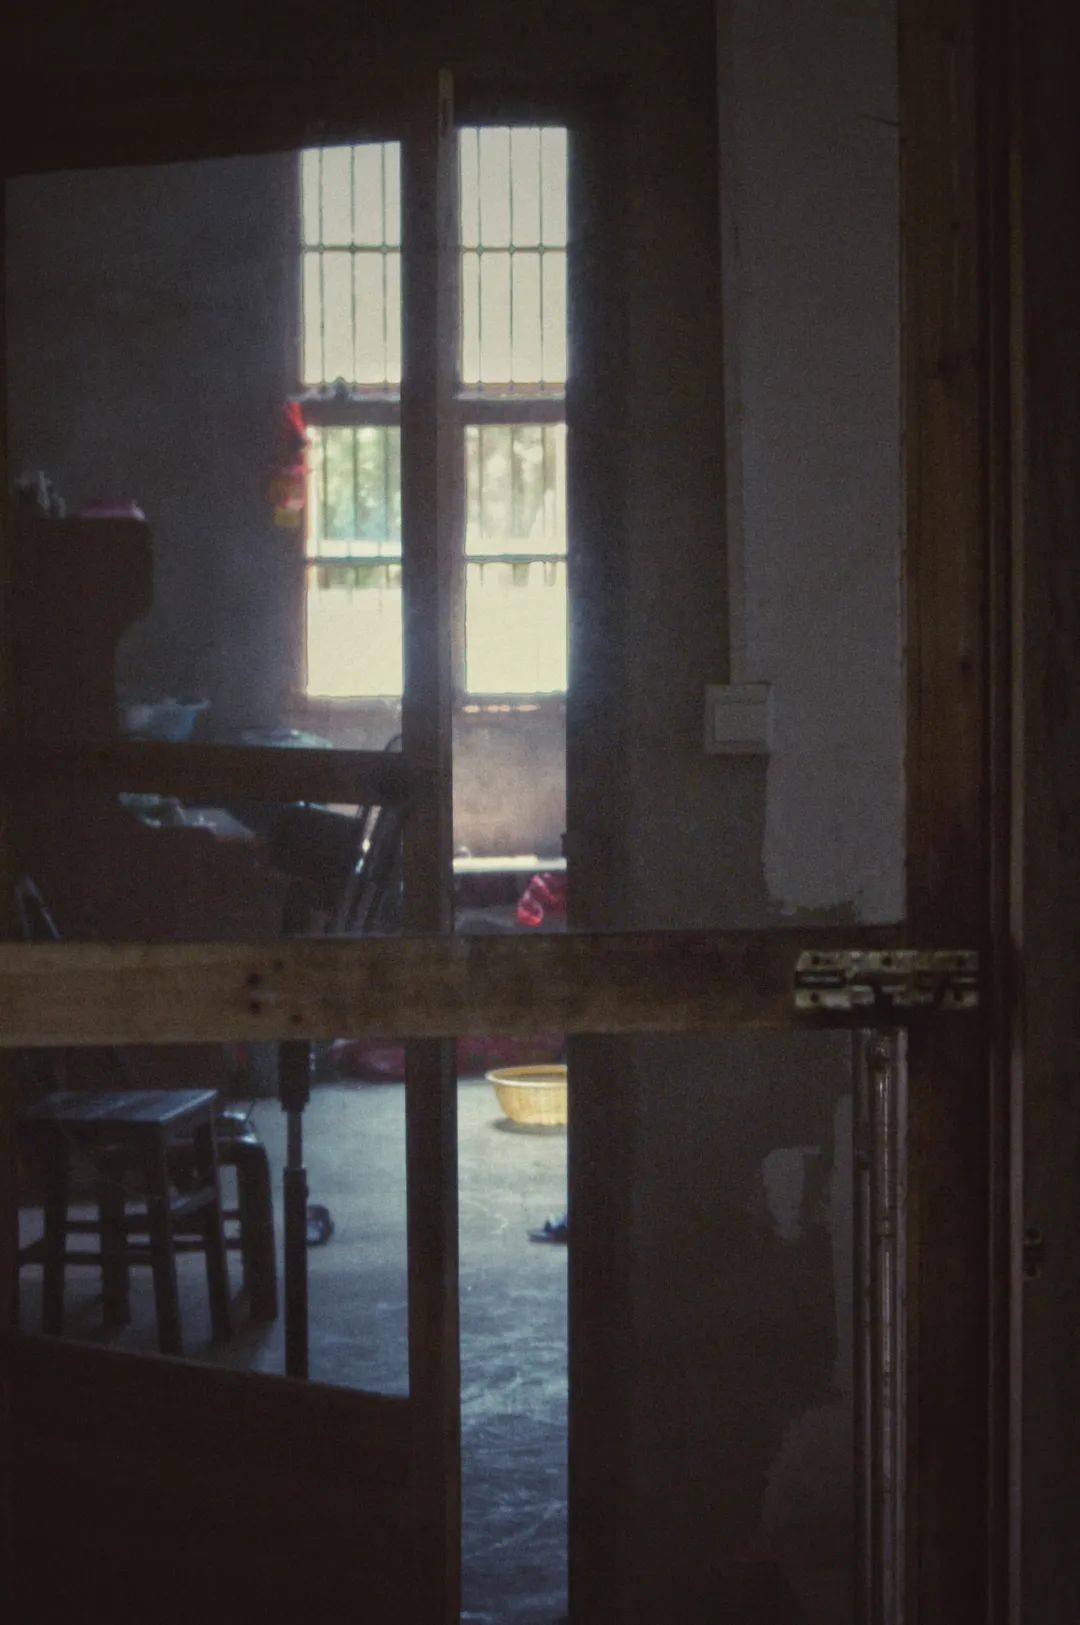 这扇很老的门,嘎吱—— 缓慢而悠长的一声,进入充满光线和灰尘的房间